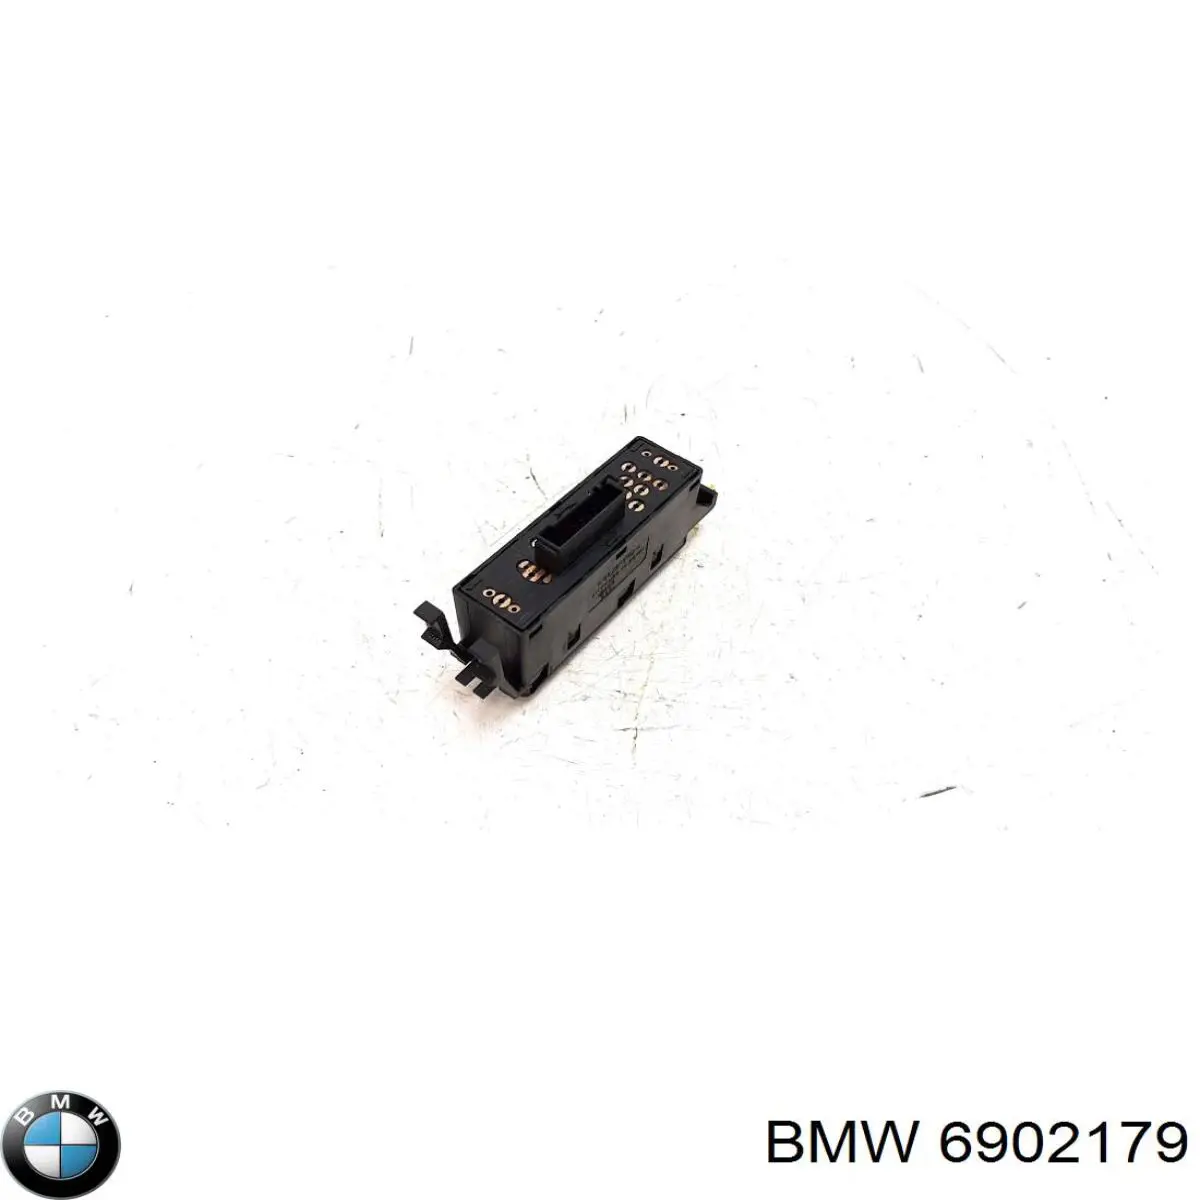 61316902179 BMW botón de elevalunas delantero derecho